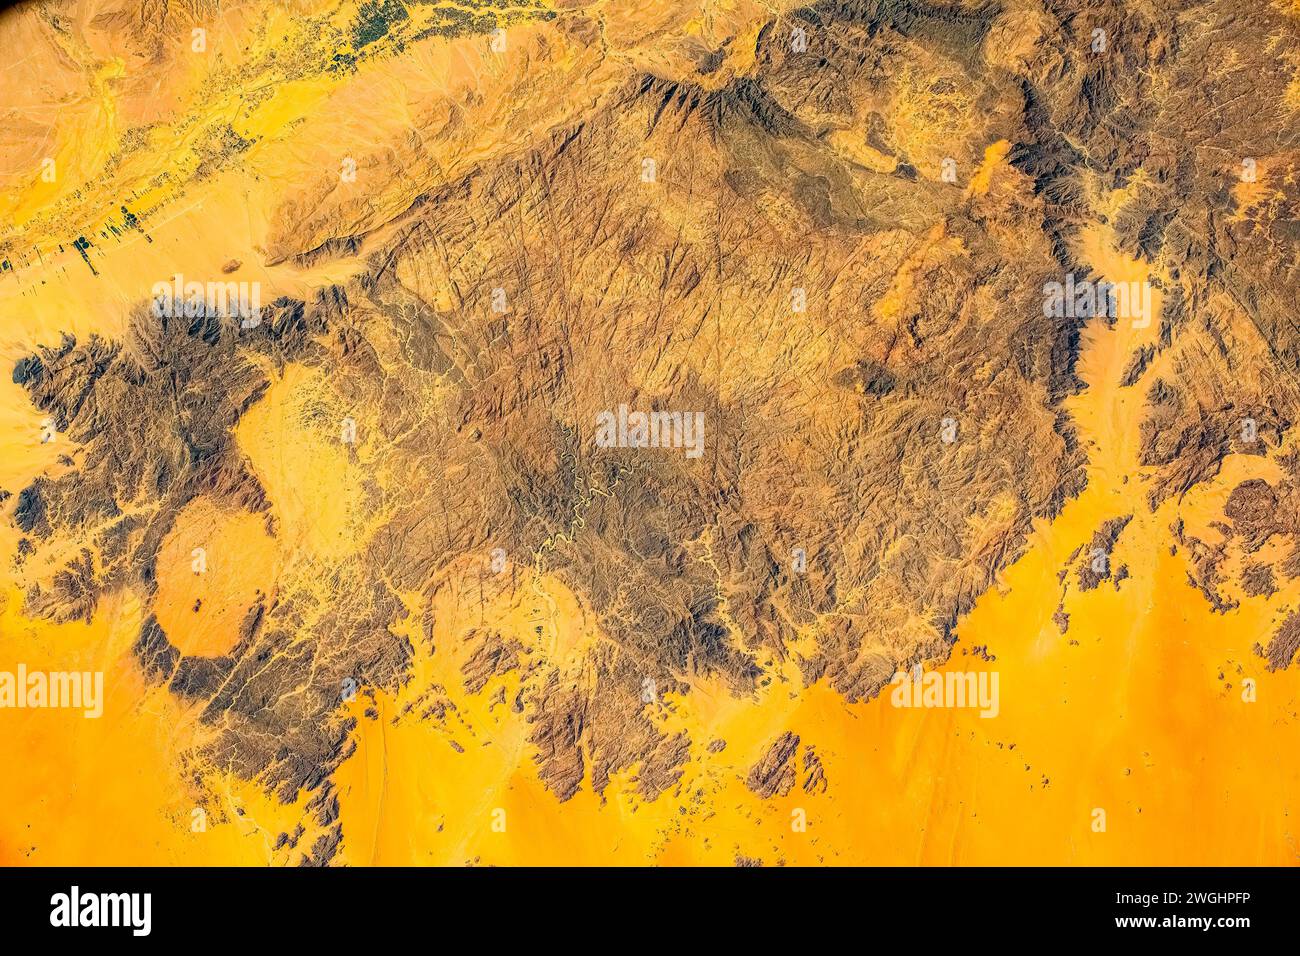 Beautiful desert land in Yemen Stock Photo